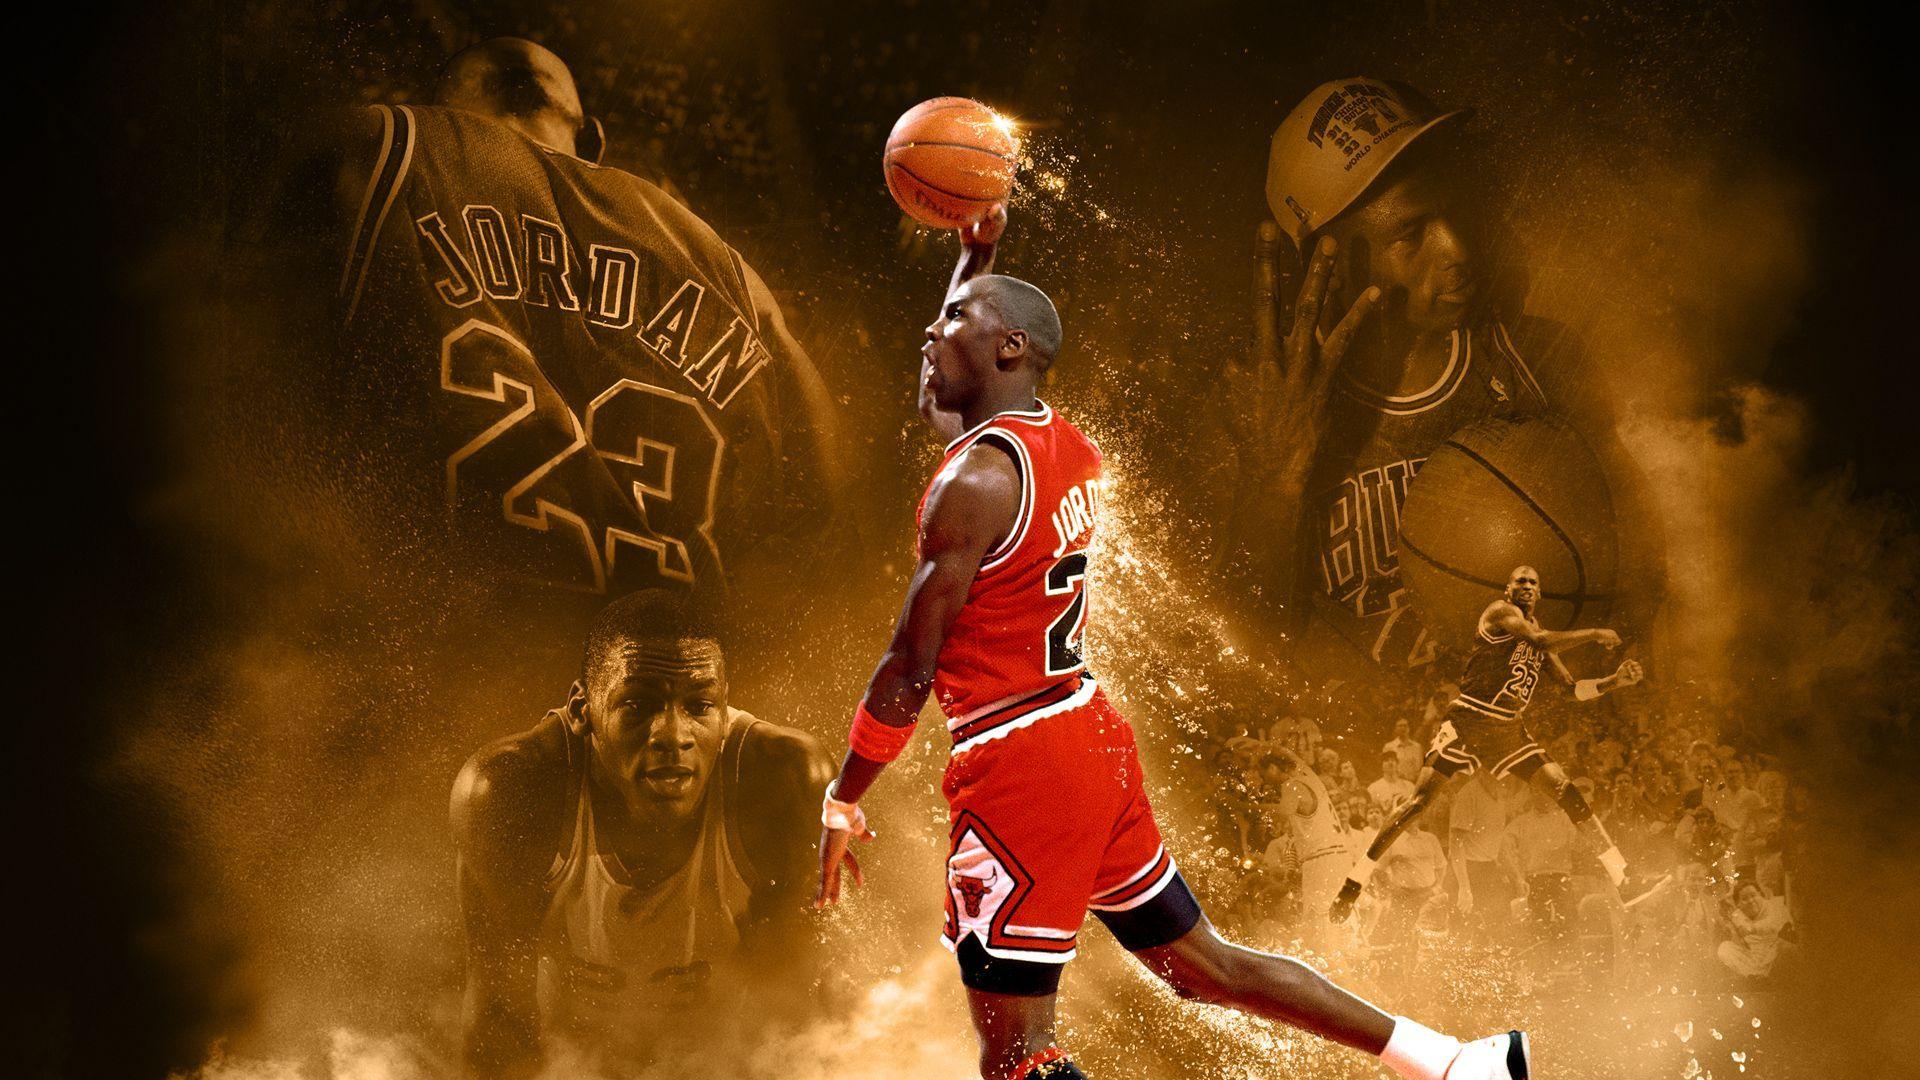 Michael Jordan Cool Wallpapers - Top ...